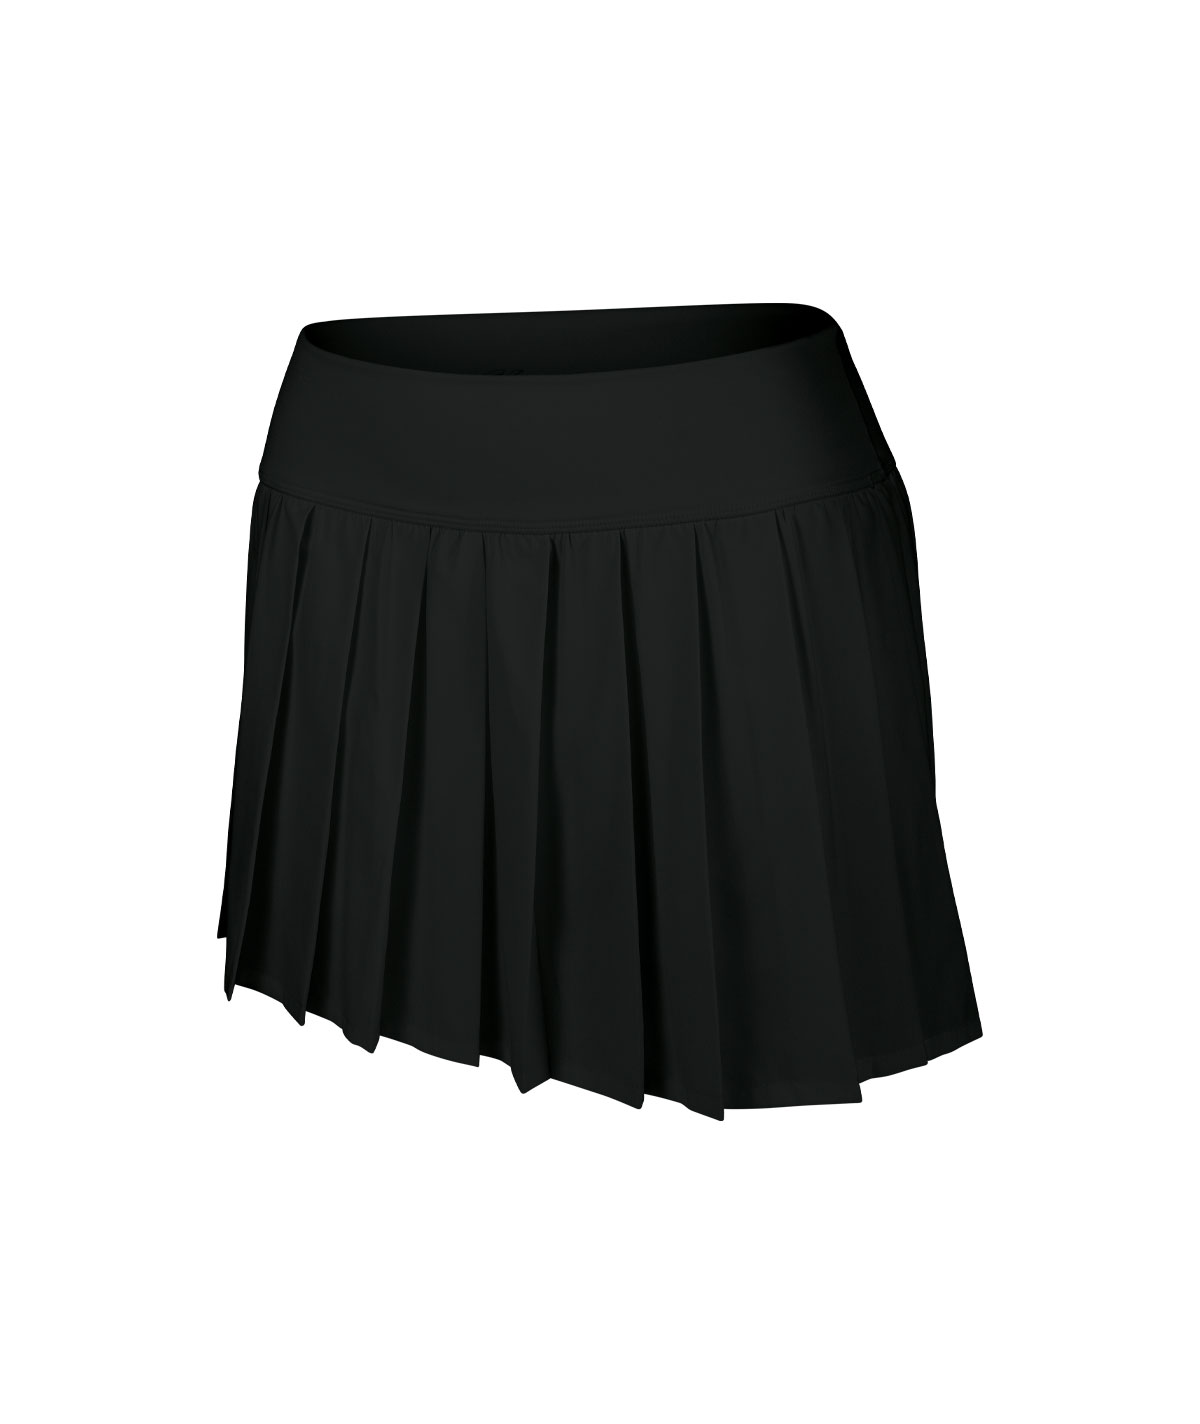 GK Pleated Skirt